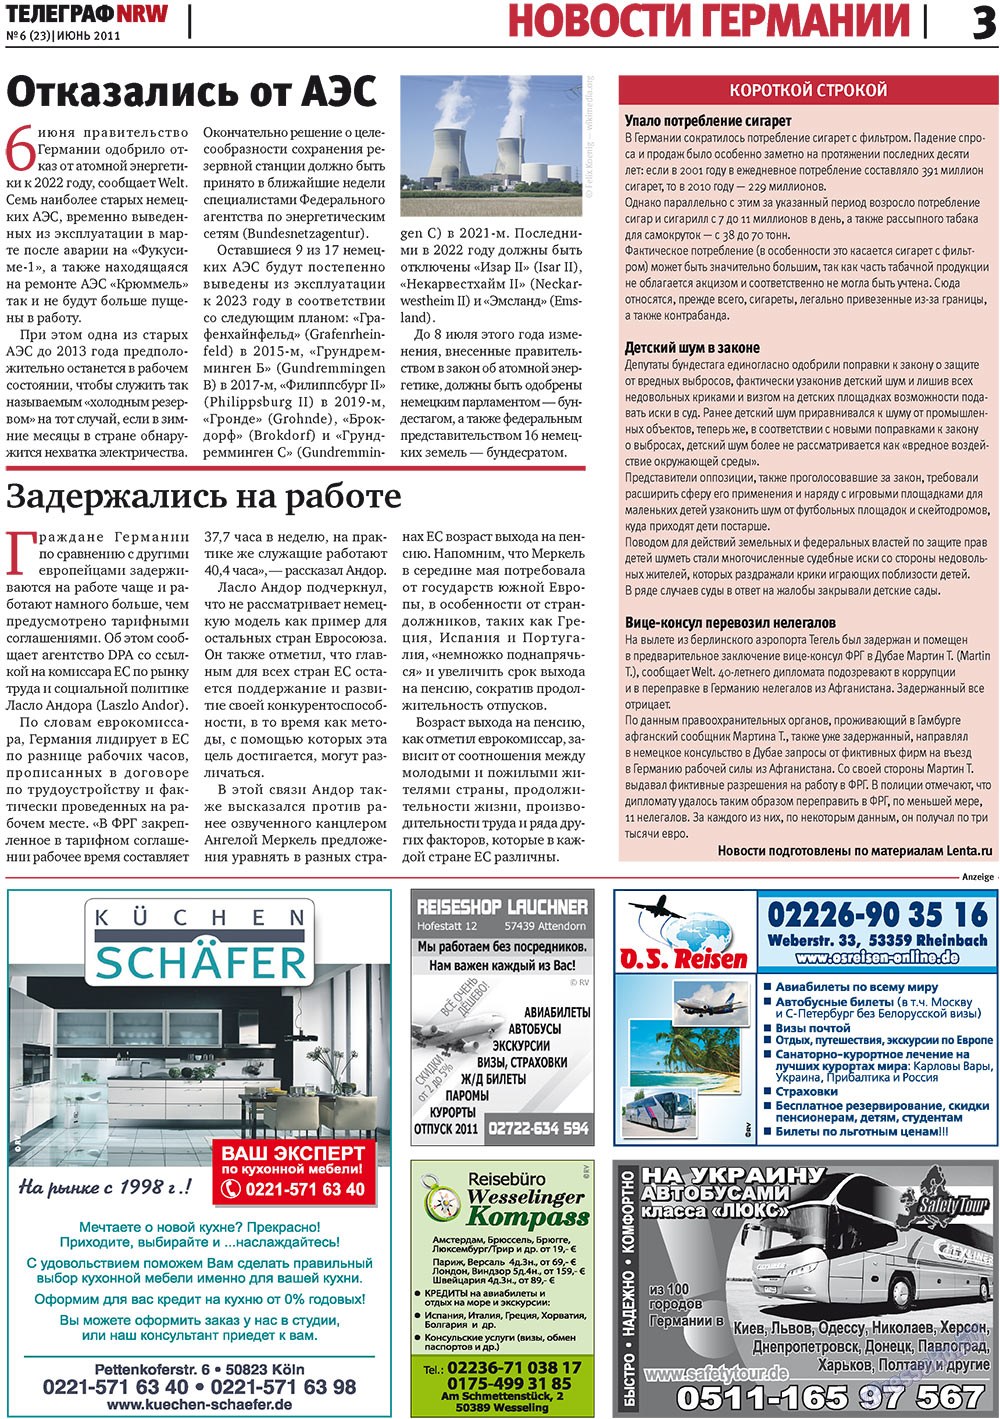 Телеграф NRW (газета). 2011 год, номер 6, стр. 3